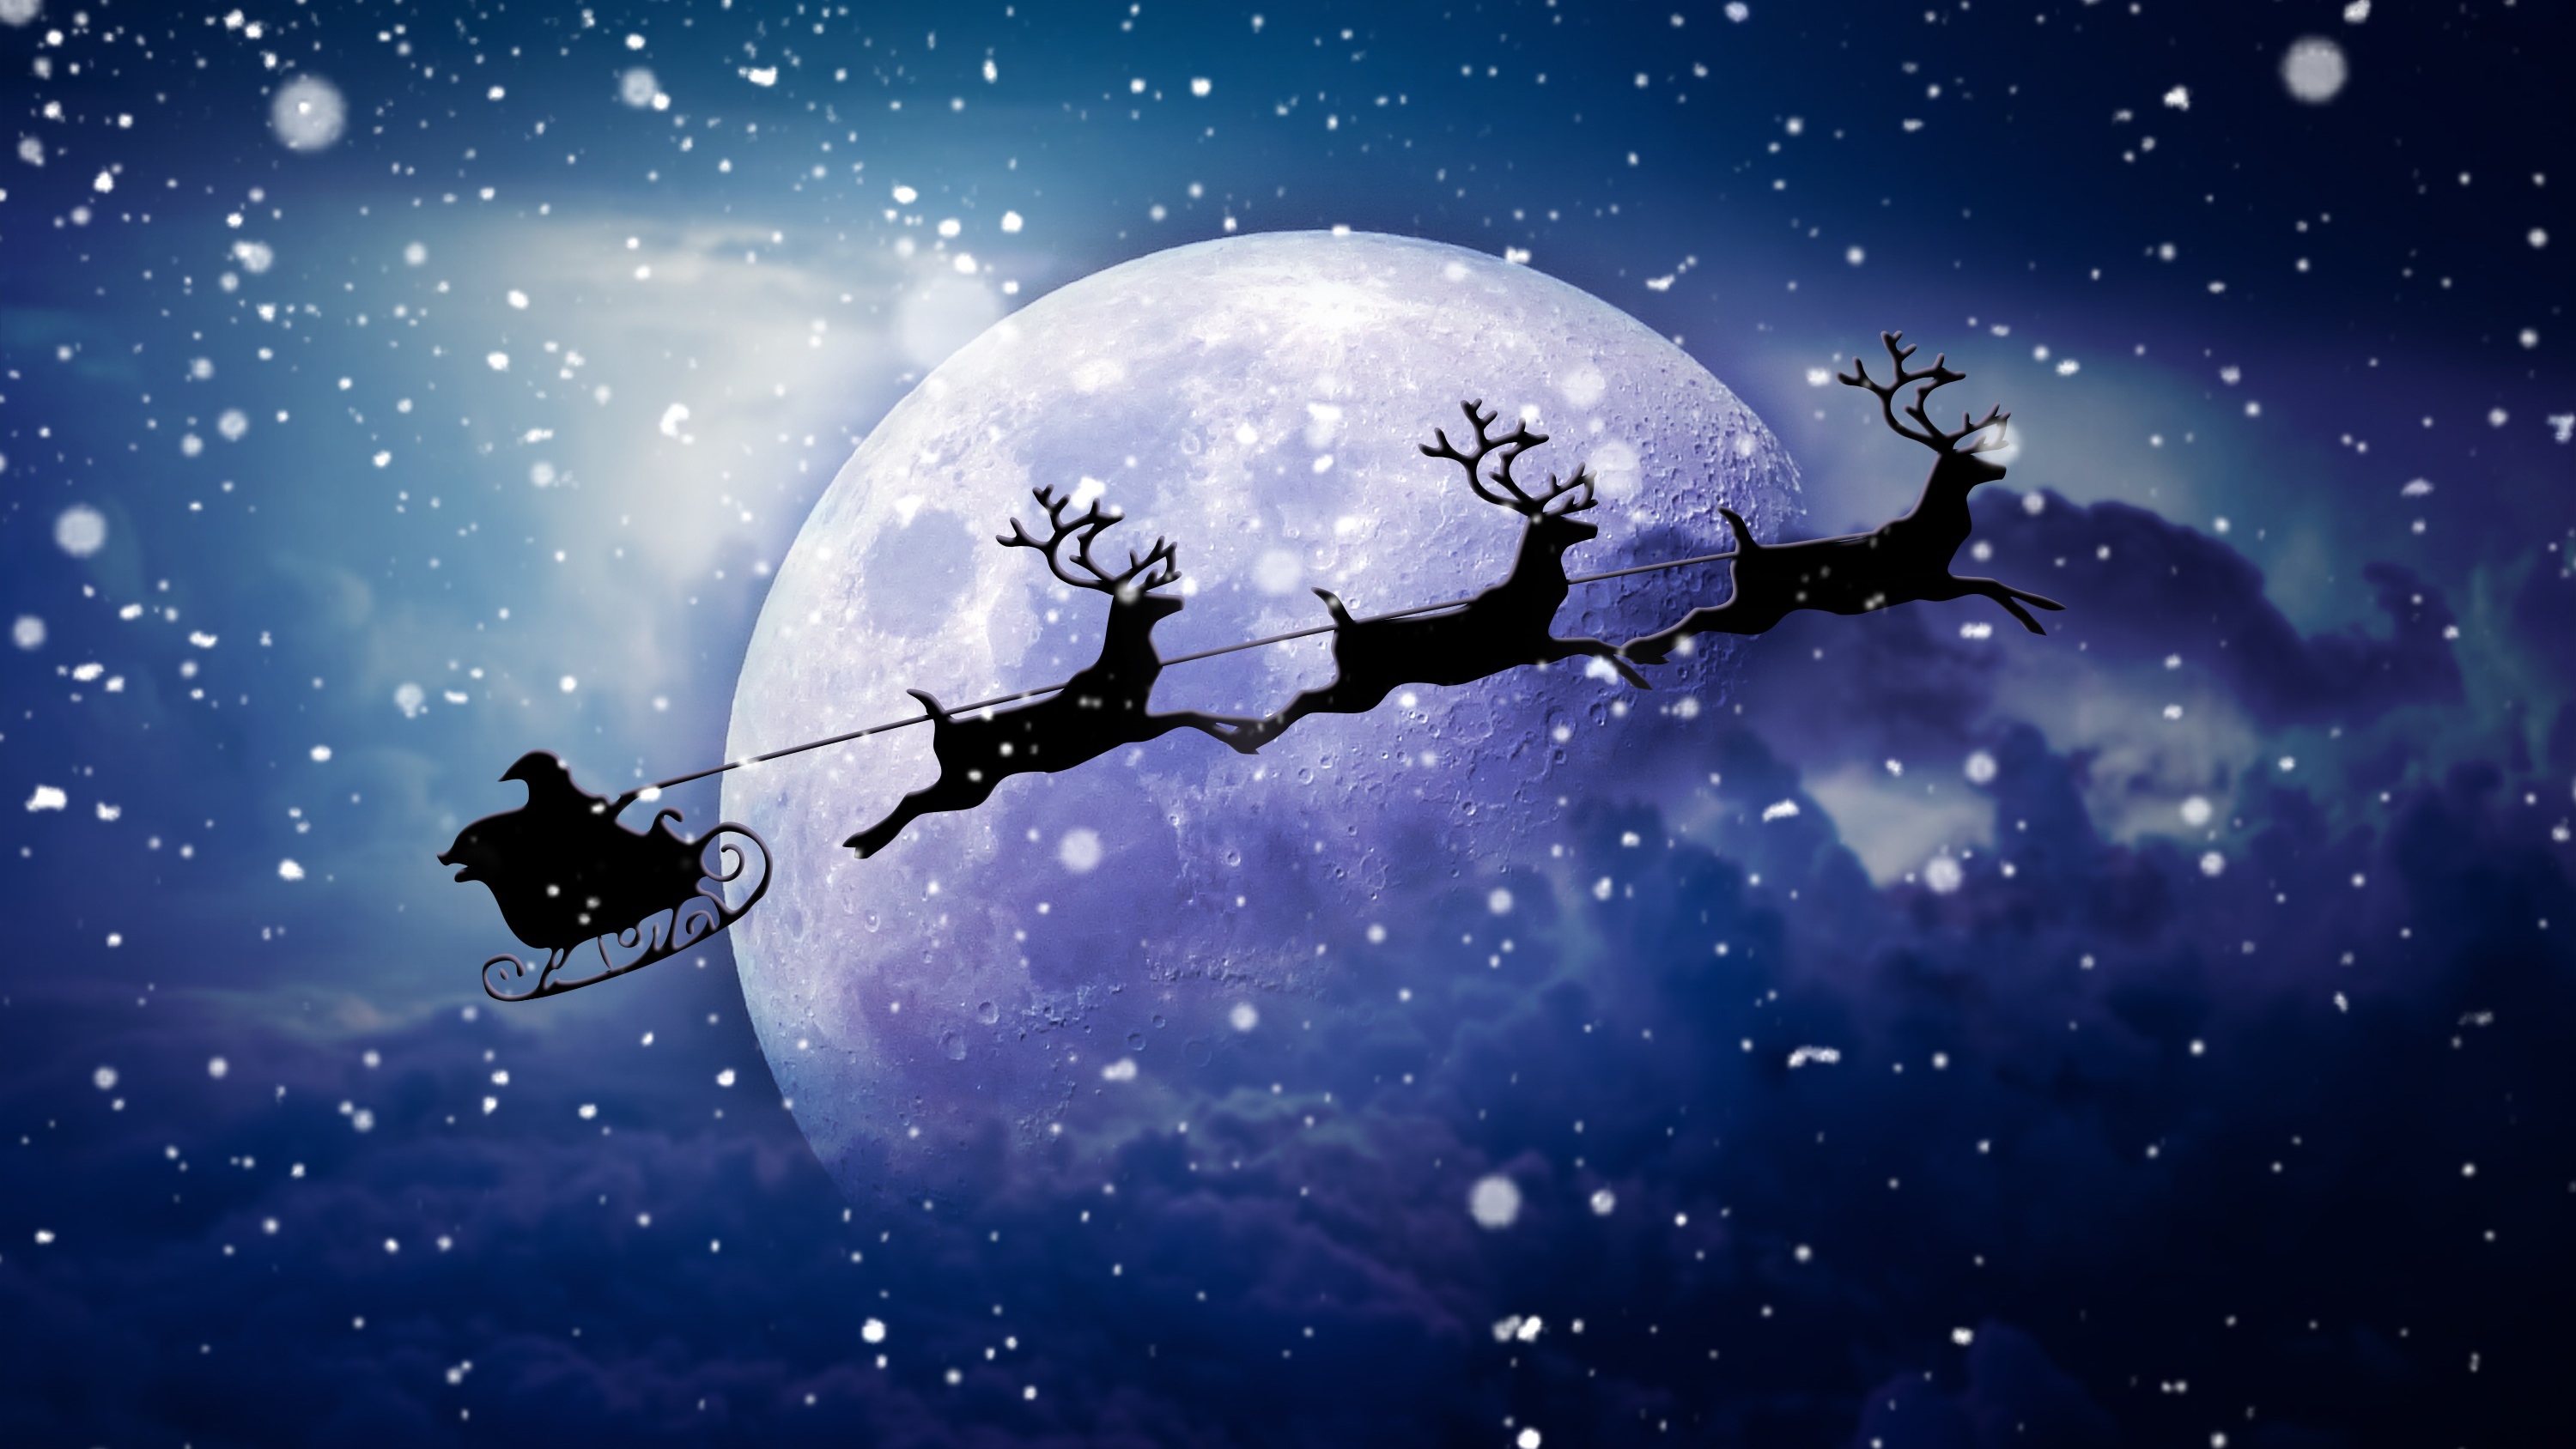 免费照片壁纸 月亮背景上的圣诞老人与驯鹿剪影